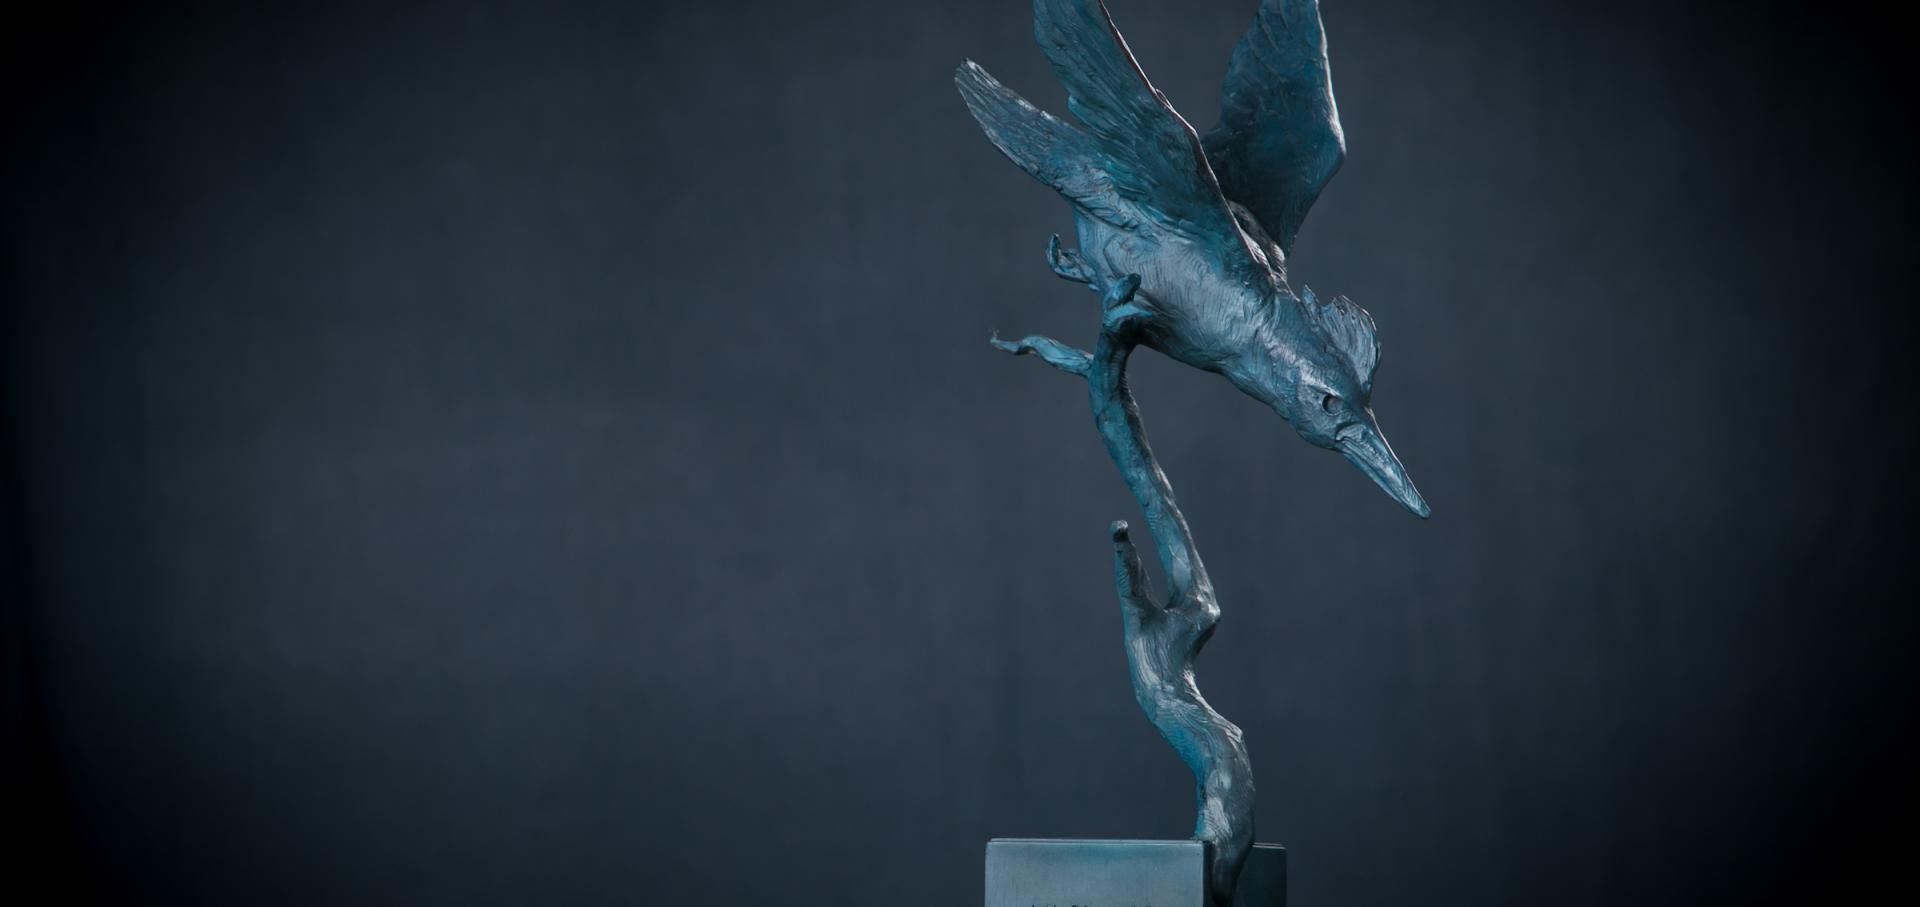 Kingfisher Award